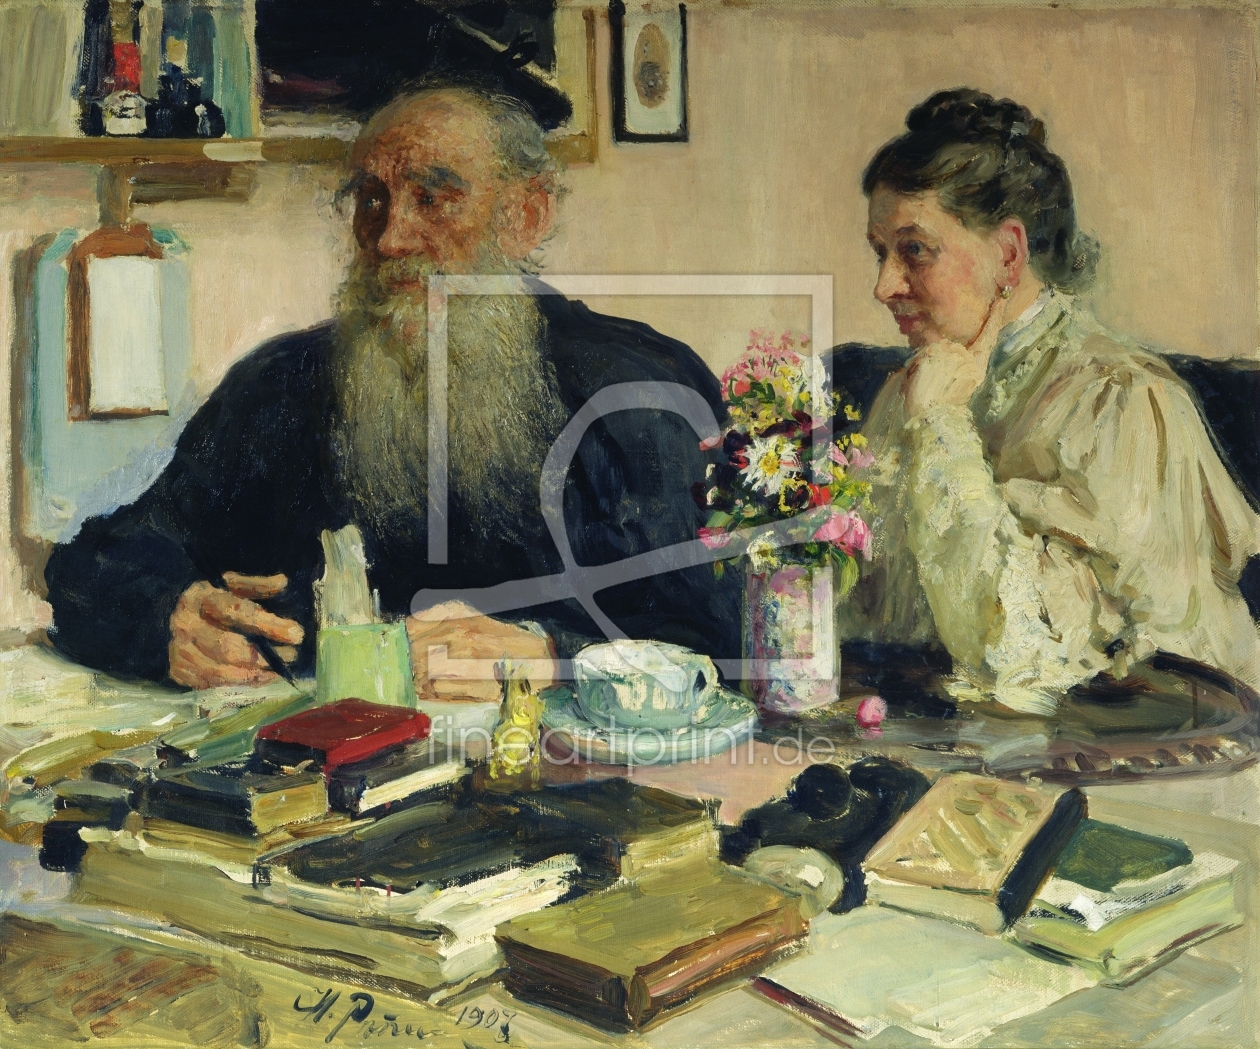 Bild-Nr.: 31001157 Leo Tolstoy with his wife in Yasnaya Polyana, 1907 erstellt von Renoir, Pierre-Auguste